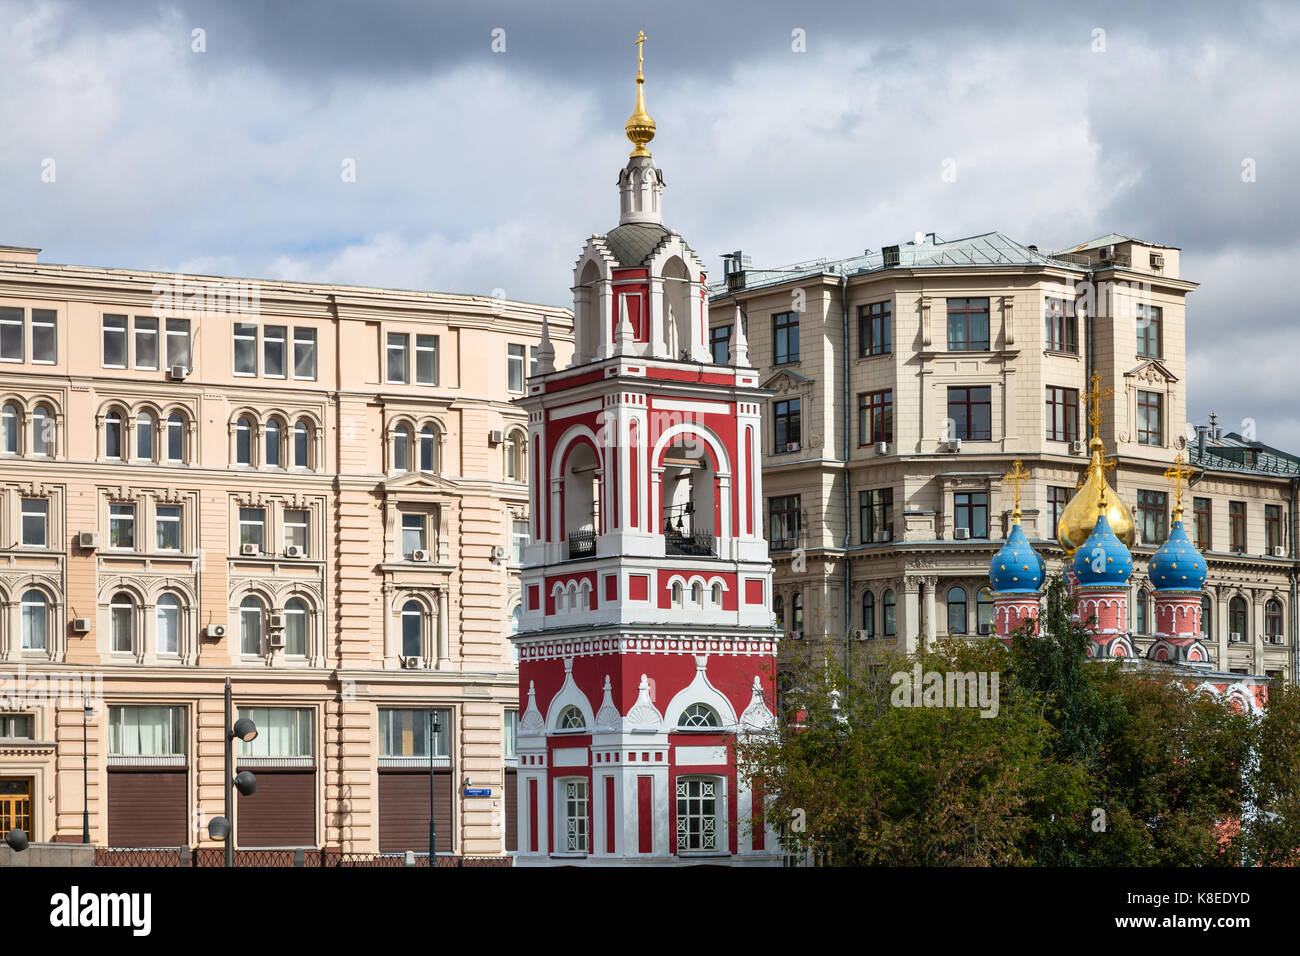 Moscou, Russie - le 16 septembre 2017 : clocher de l'église de St George (la protection de la Sainte Vierge) sur la montagne sur la rue varvarka pskov Banque D'Images